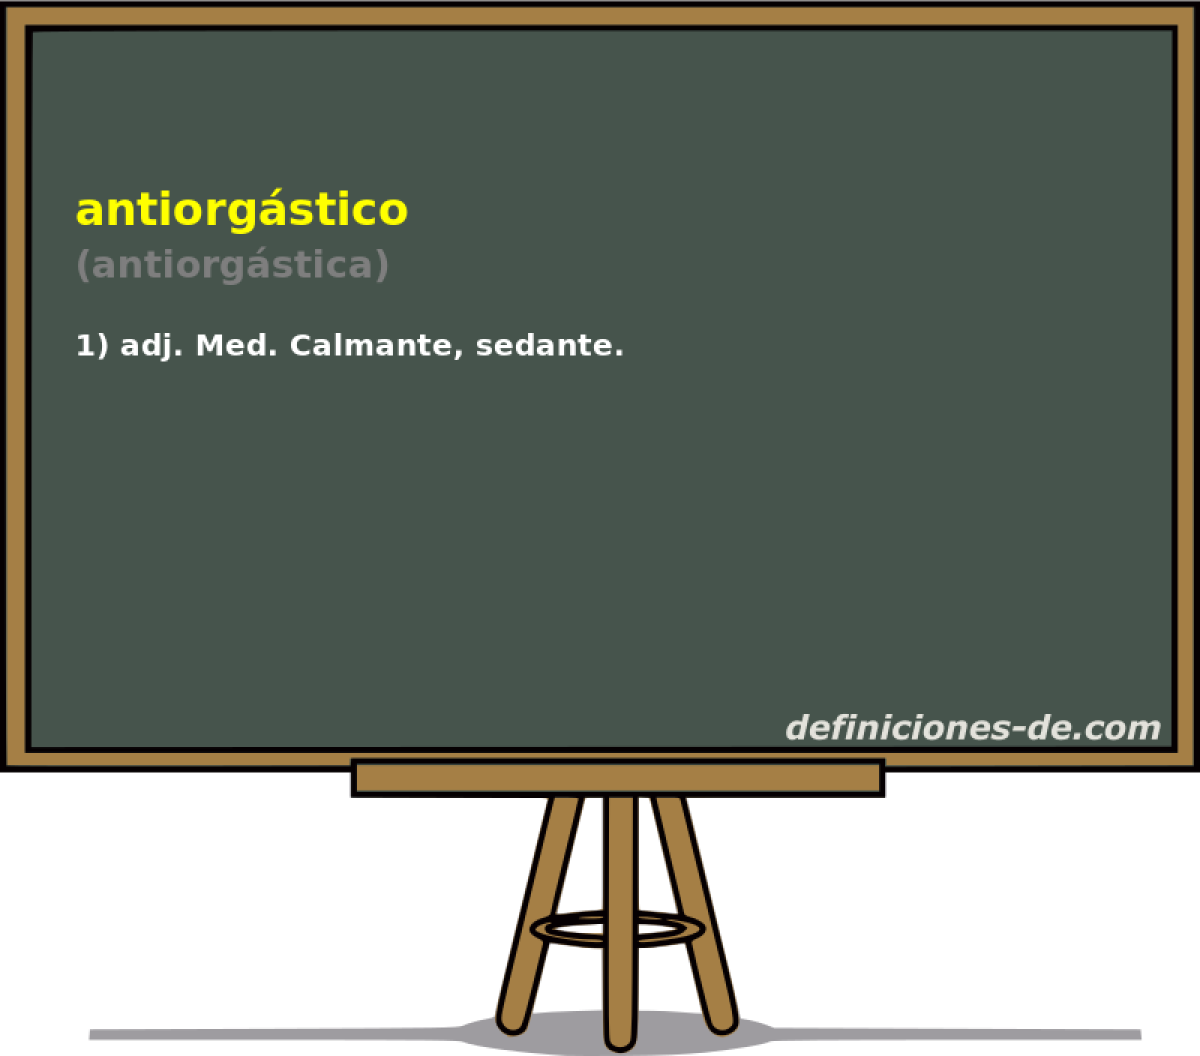 antiorgstico (antiorgstica)